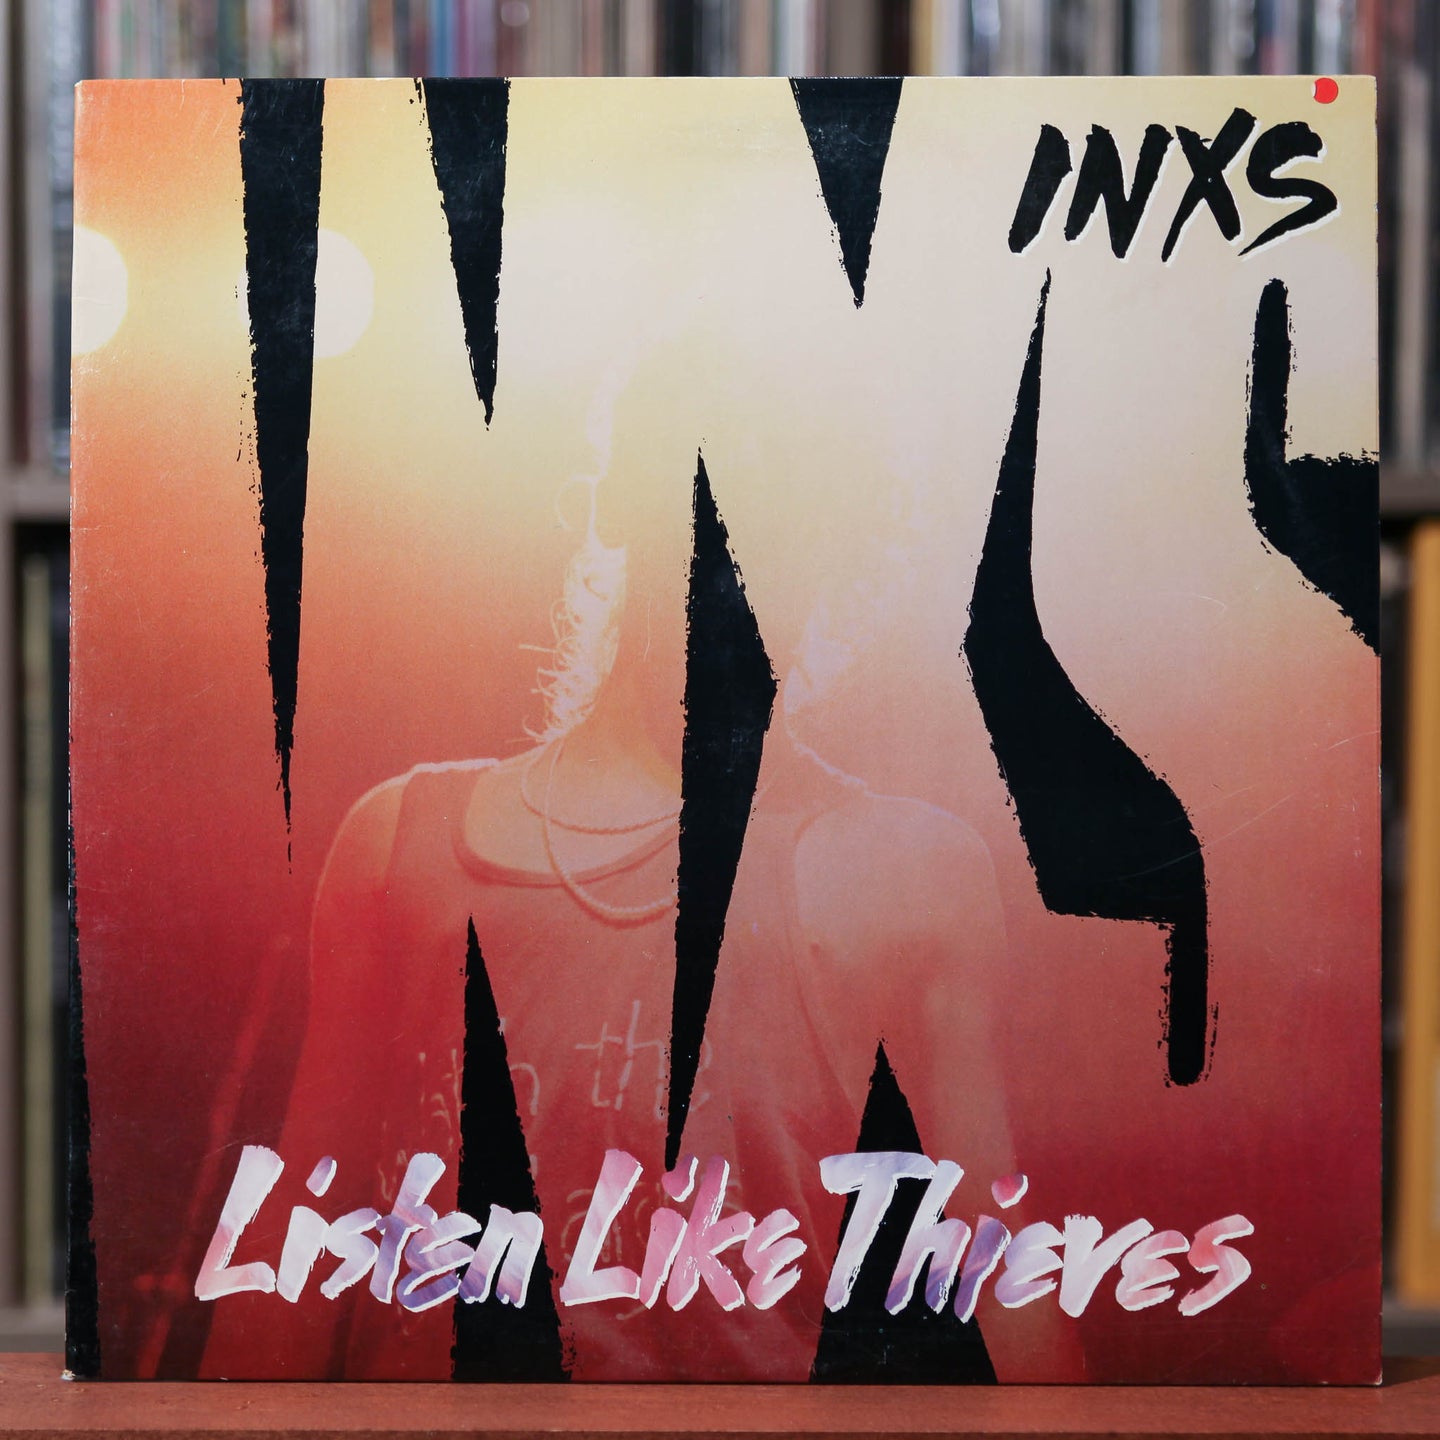 INXS - Listen Like Thieves - 1985 Atlantic, EX/VG+